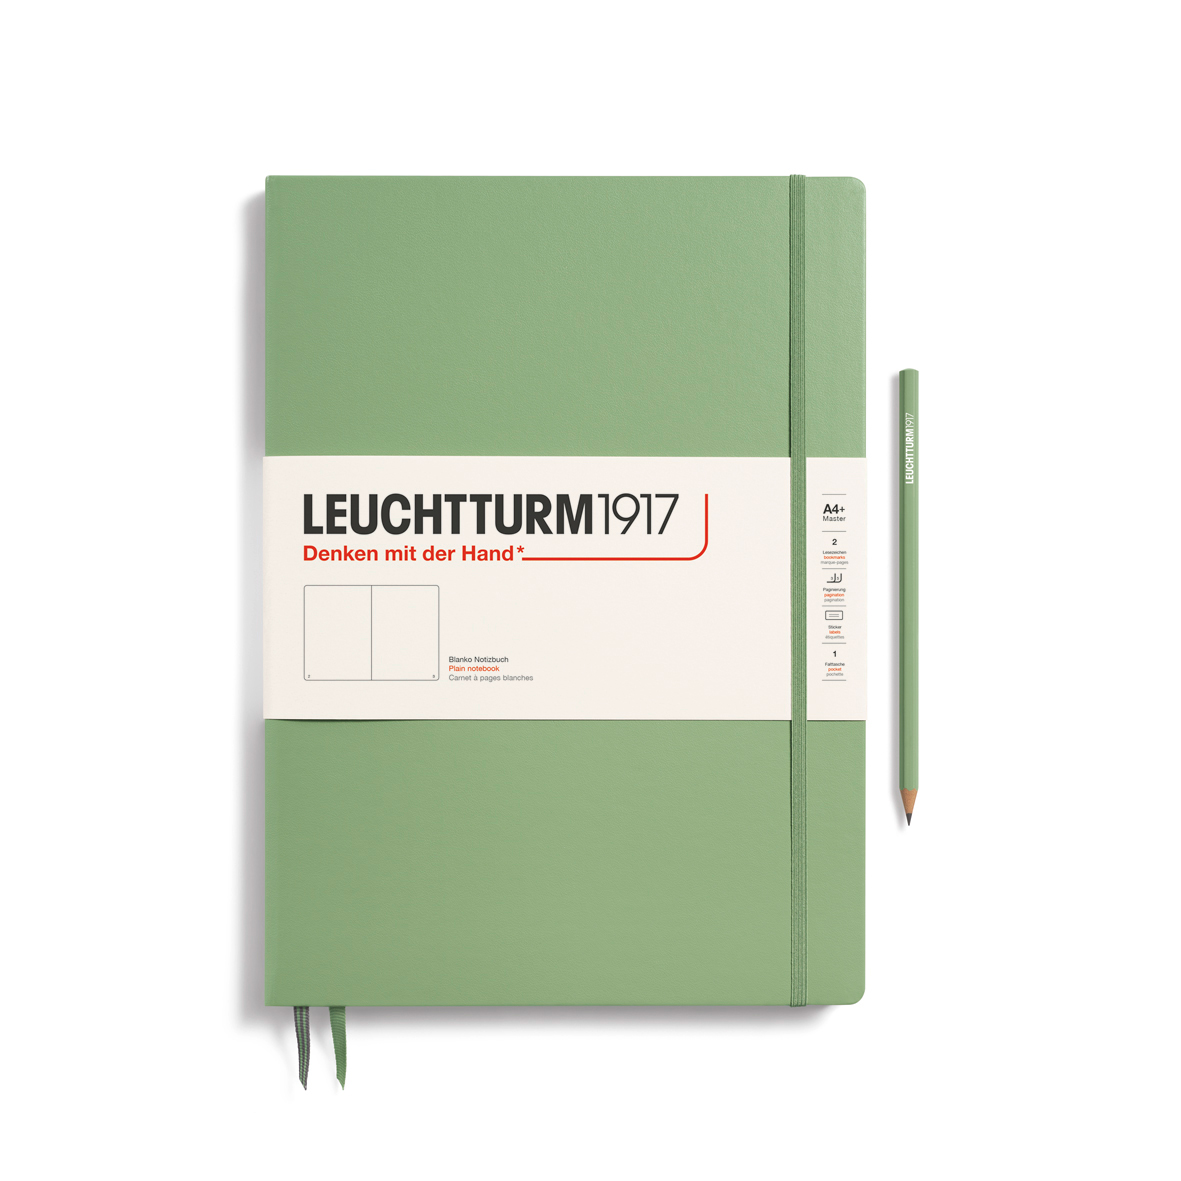 Записная книжка нелинованная Leuchtturm Master Slim А4+ 123 стр., твердая обложка пастельный зеленый записная книжка в линейку leuchtturm master a4 235 стр твердая обложка темно синяя